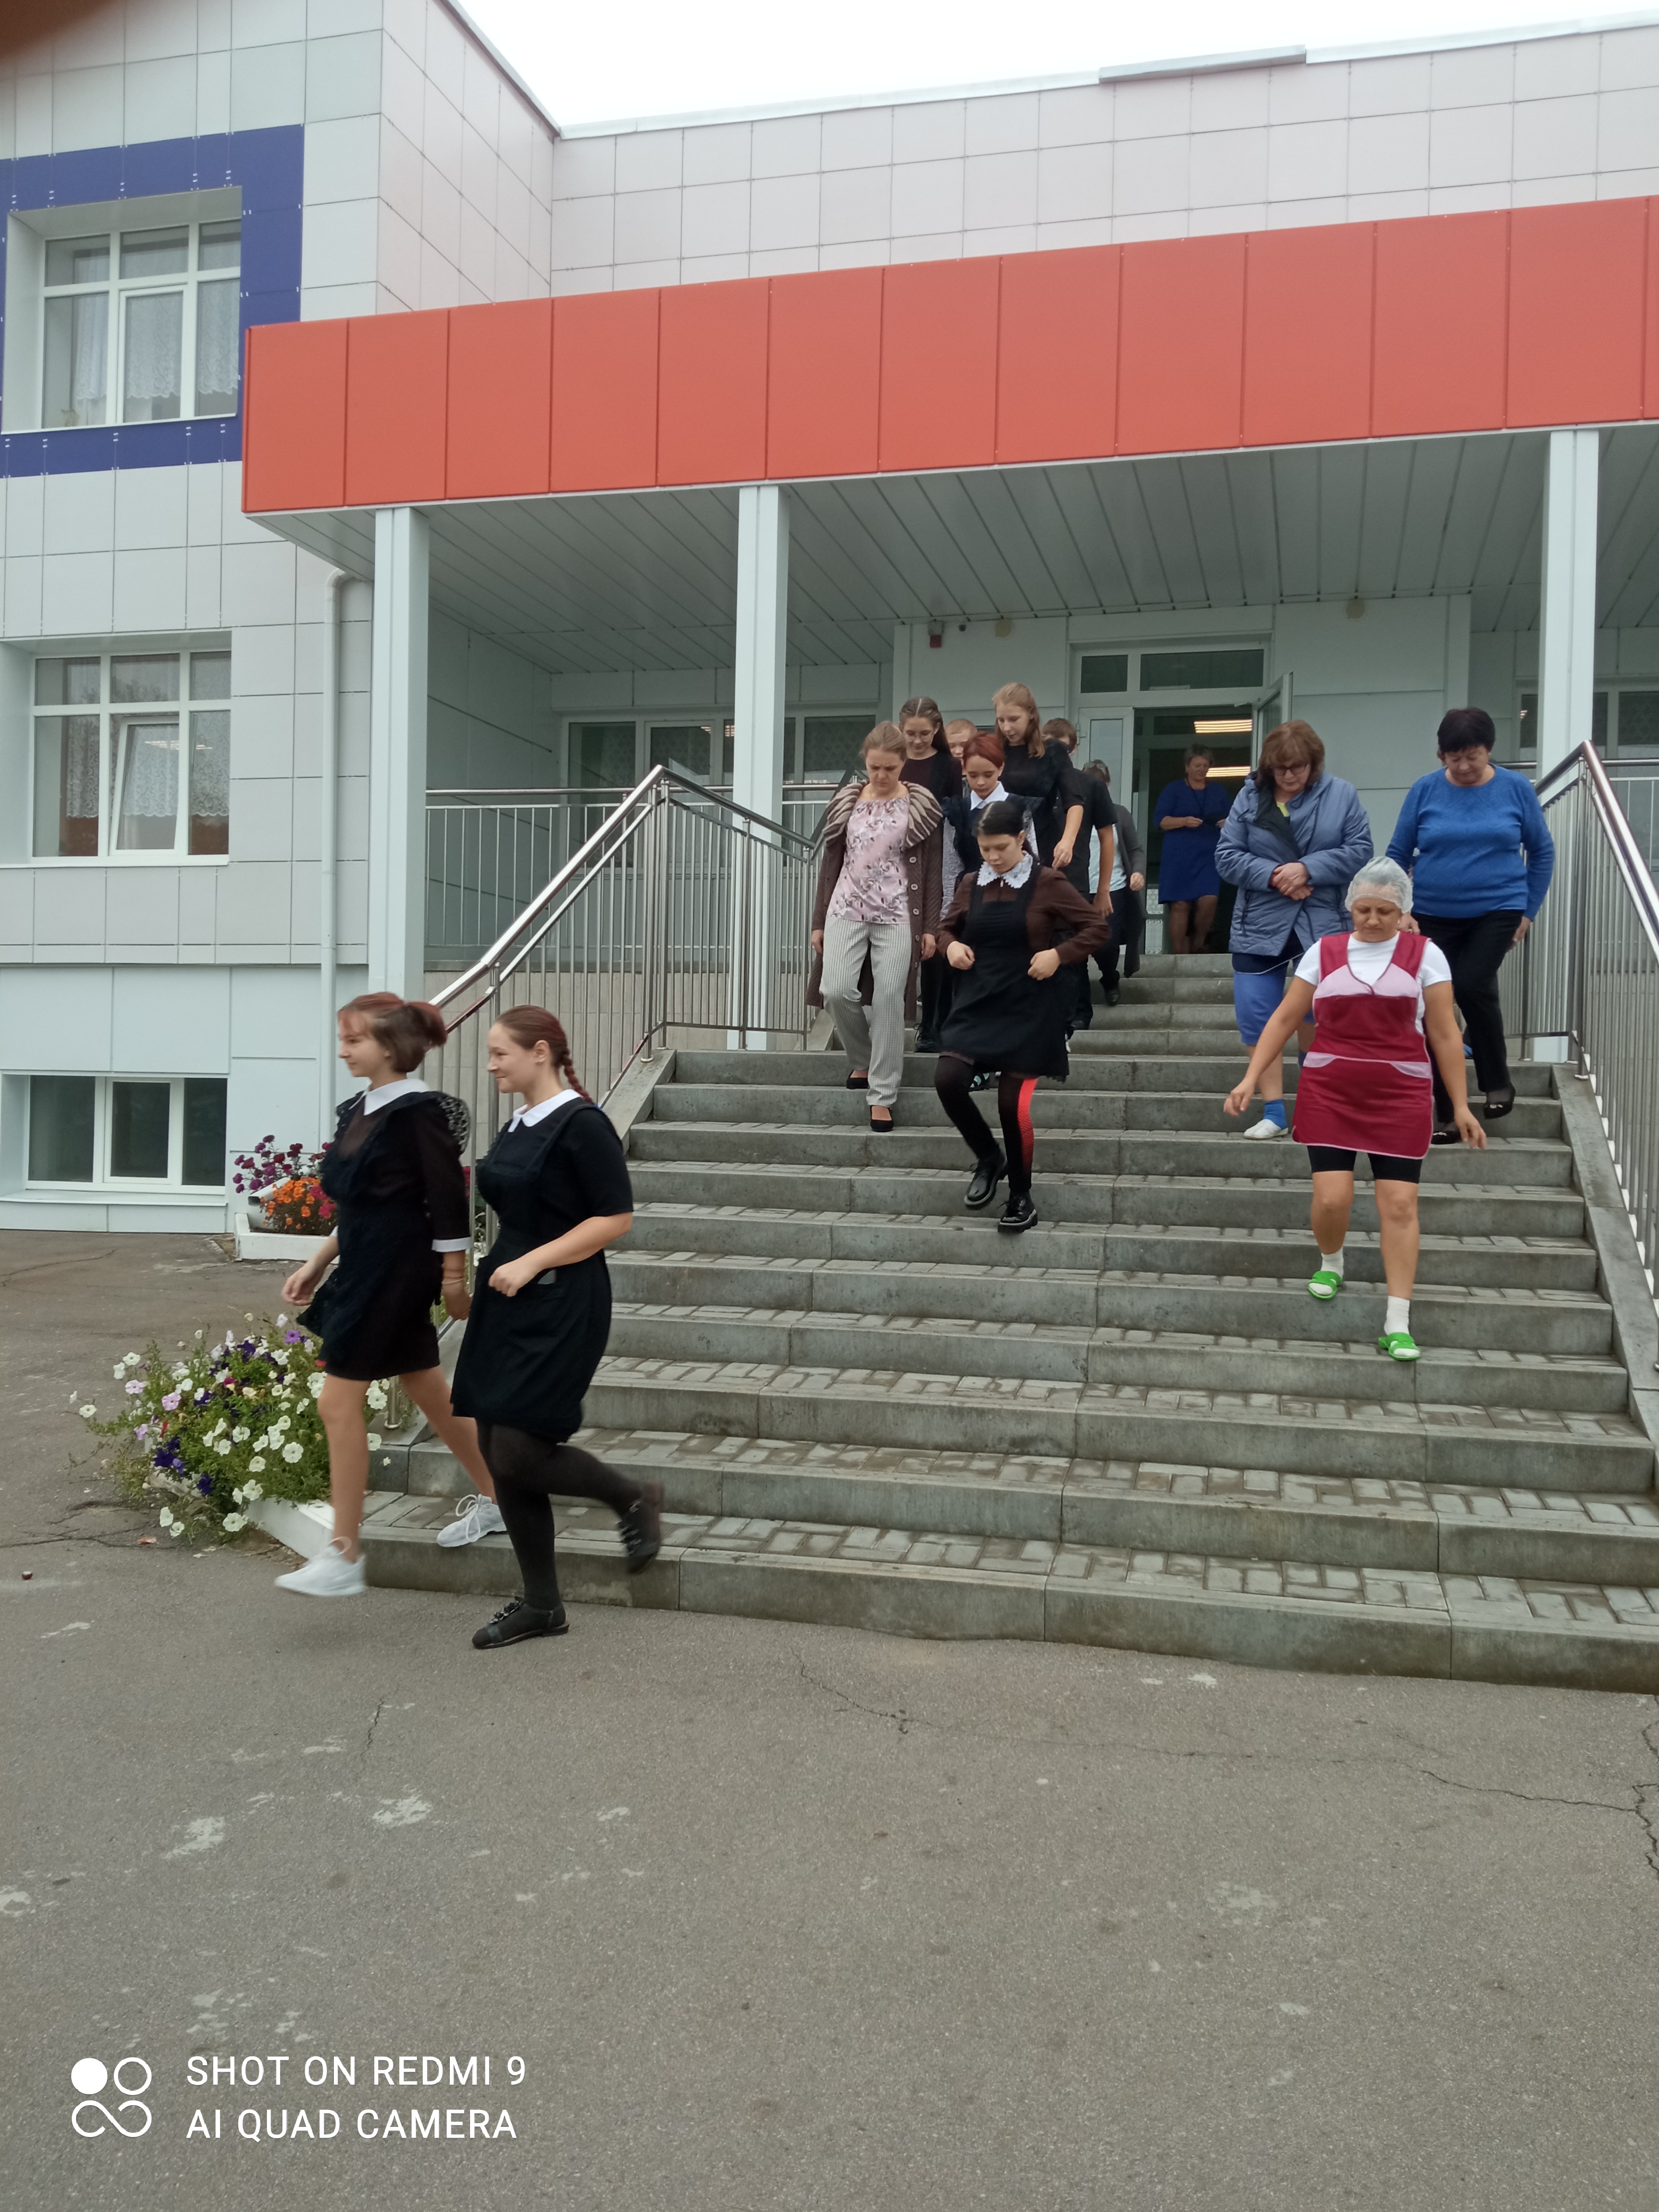 4 октября в школе было проведено мероприятие, посвященное 90 - летию со дня образования Гражданской обороны Российской Федерации.